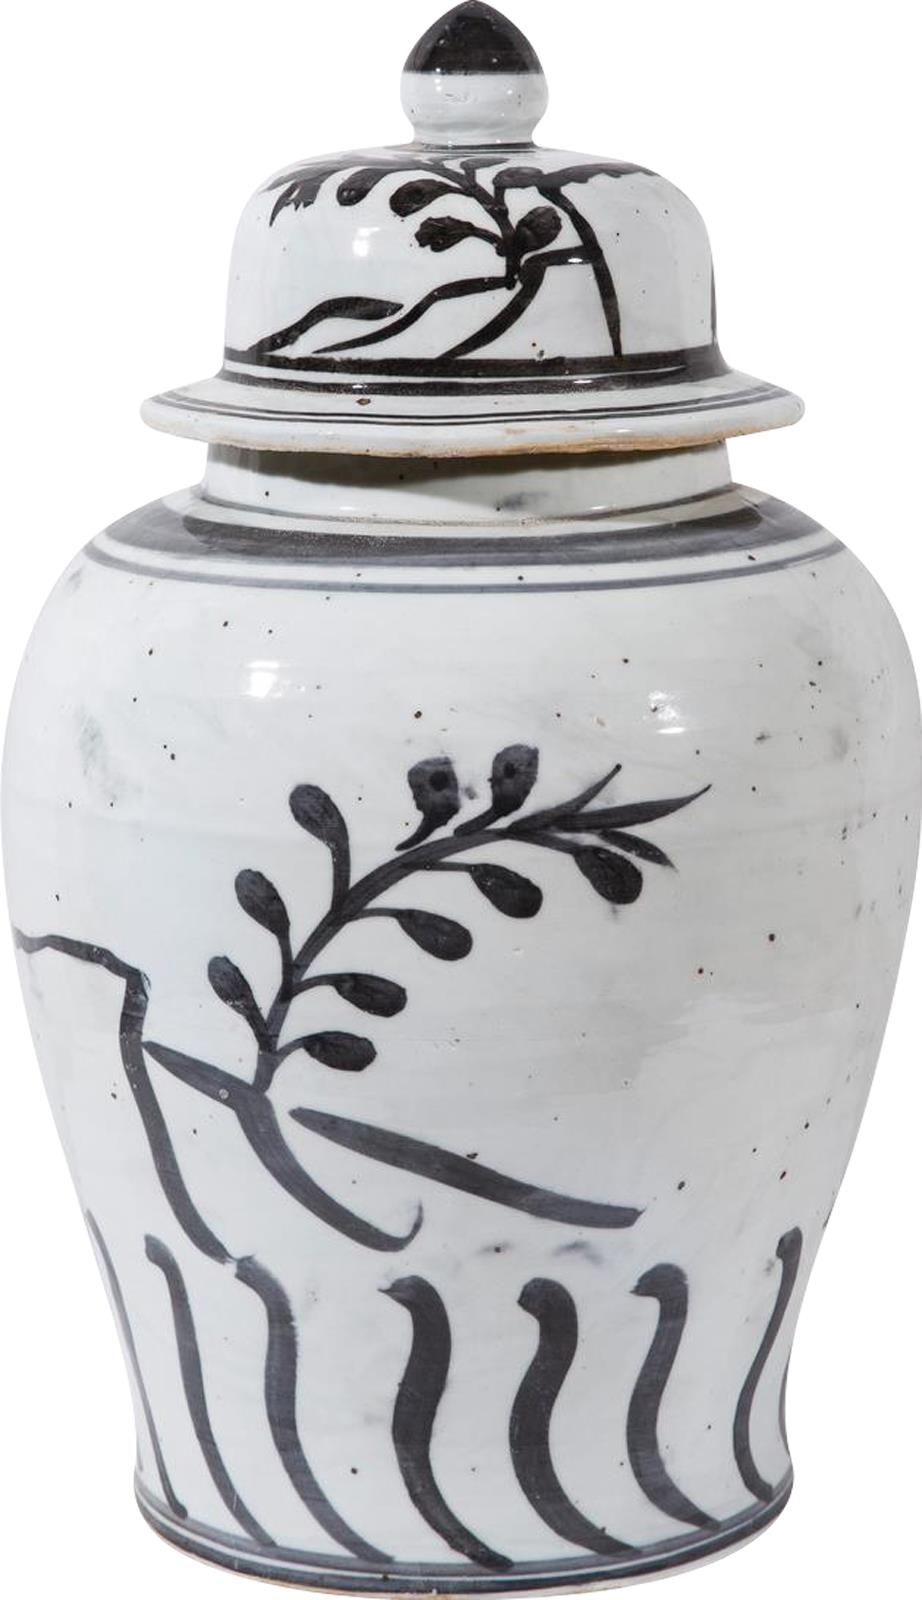 Temple Jar Vase Flying Bird Black Vintage White Crackle Ceramic Han-Image 2